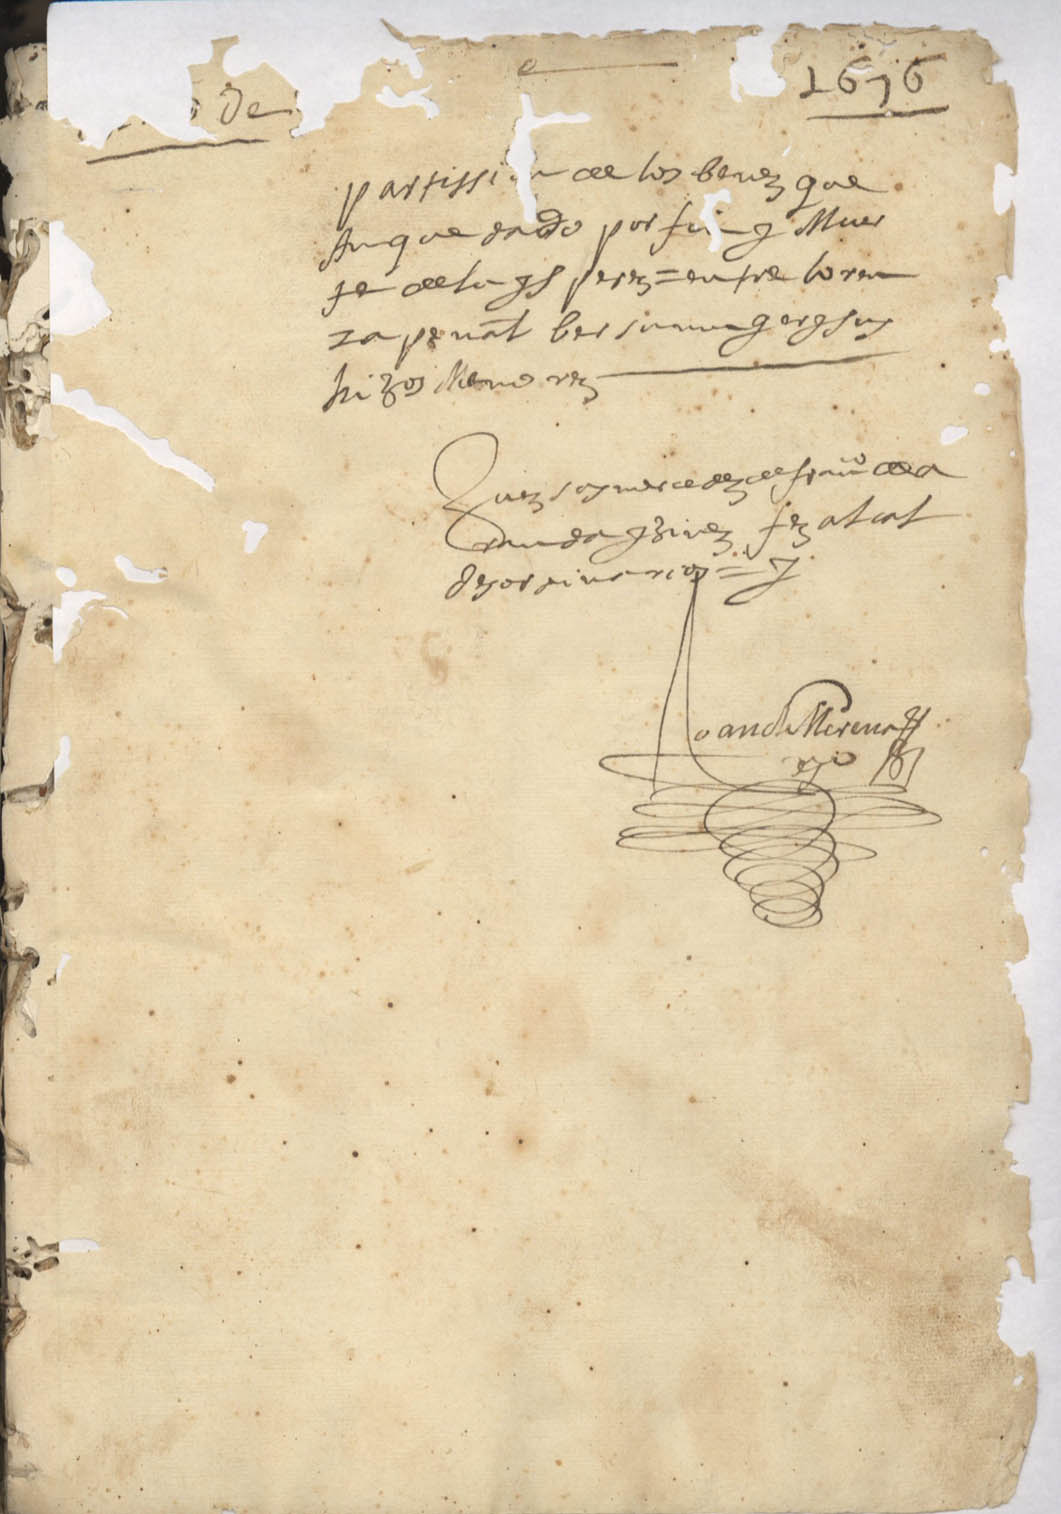 Registro de inventarios y particiones de bienes, Alcantarilla. Años 1601-1695.